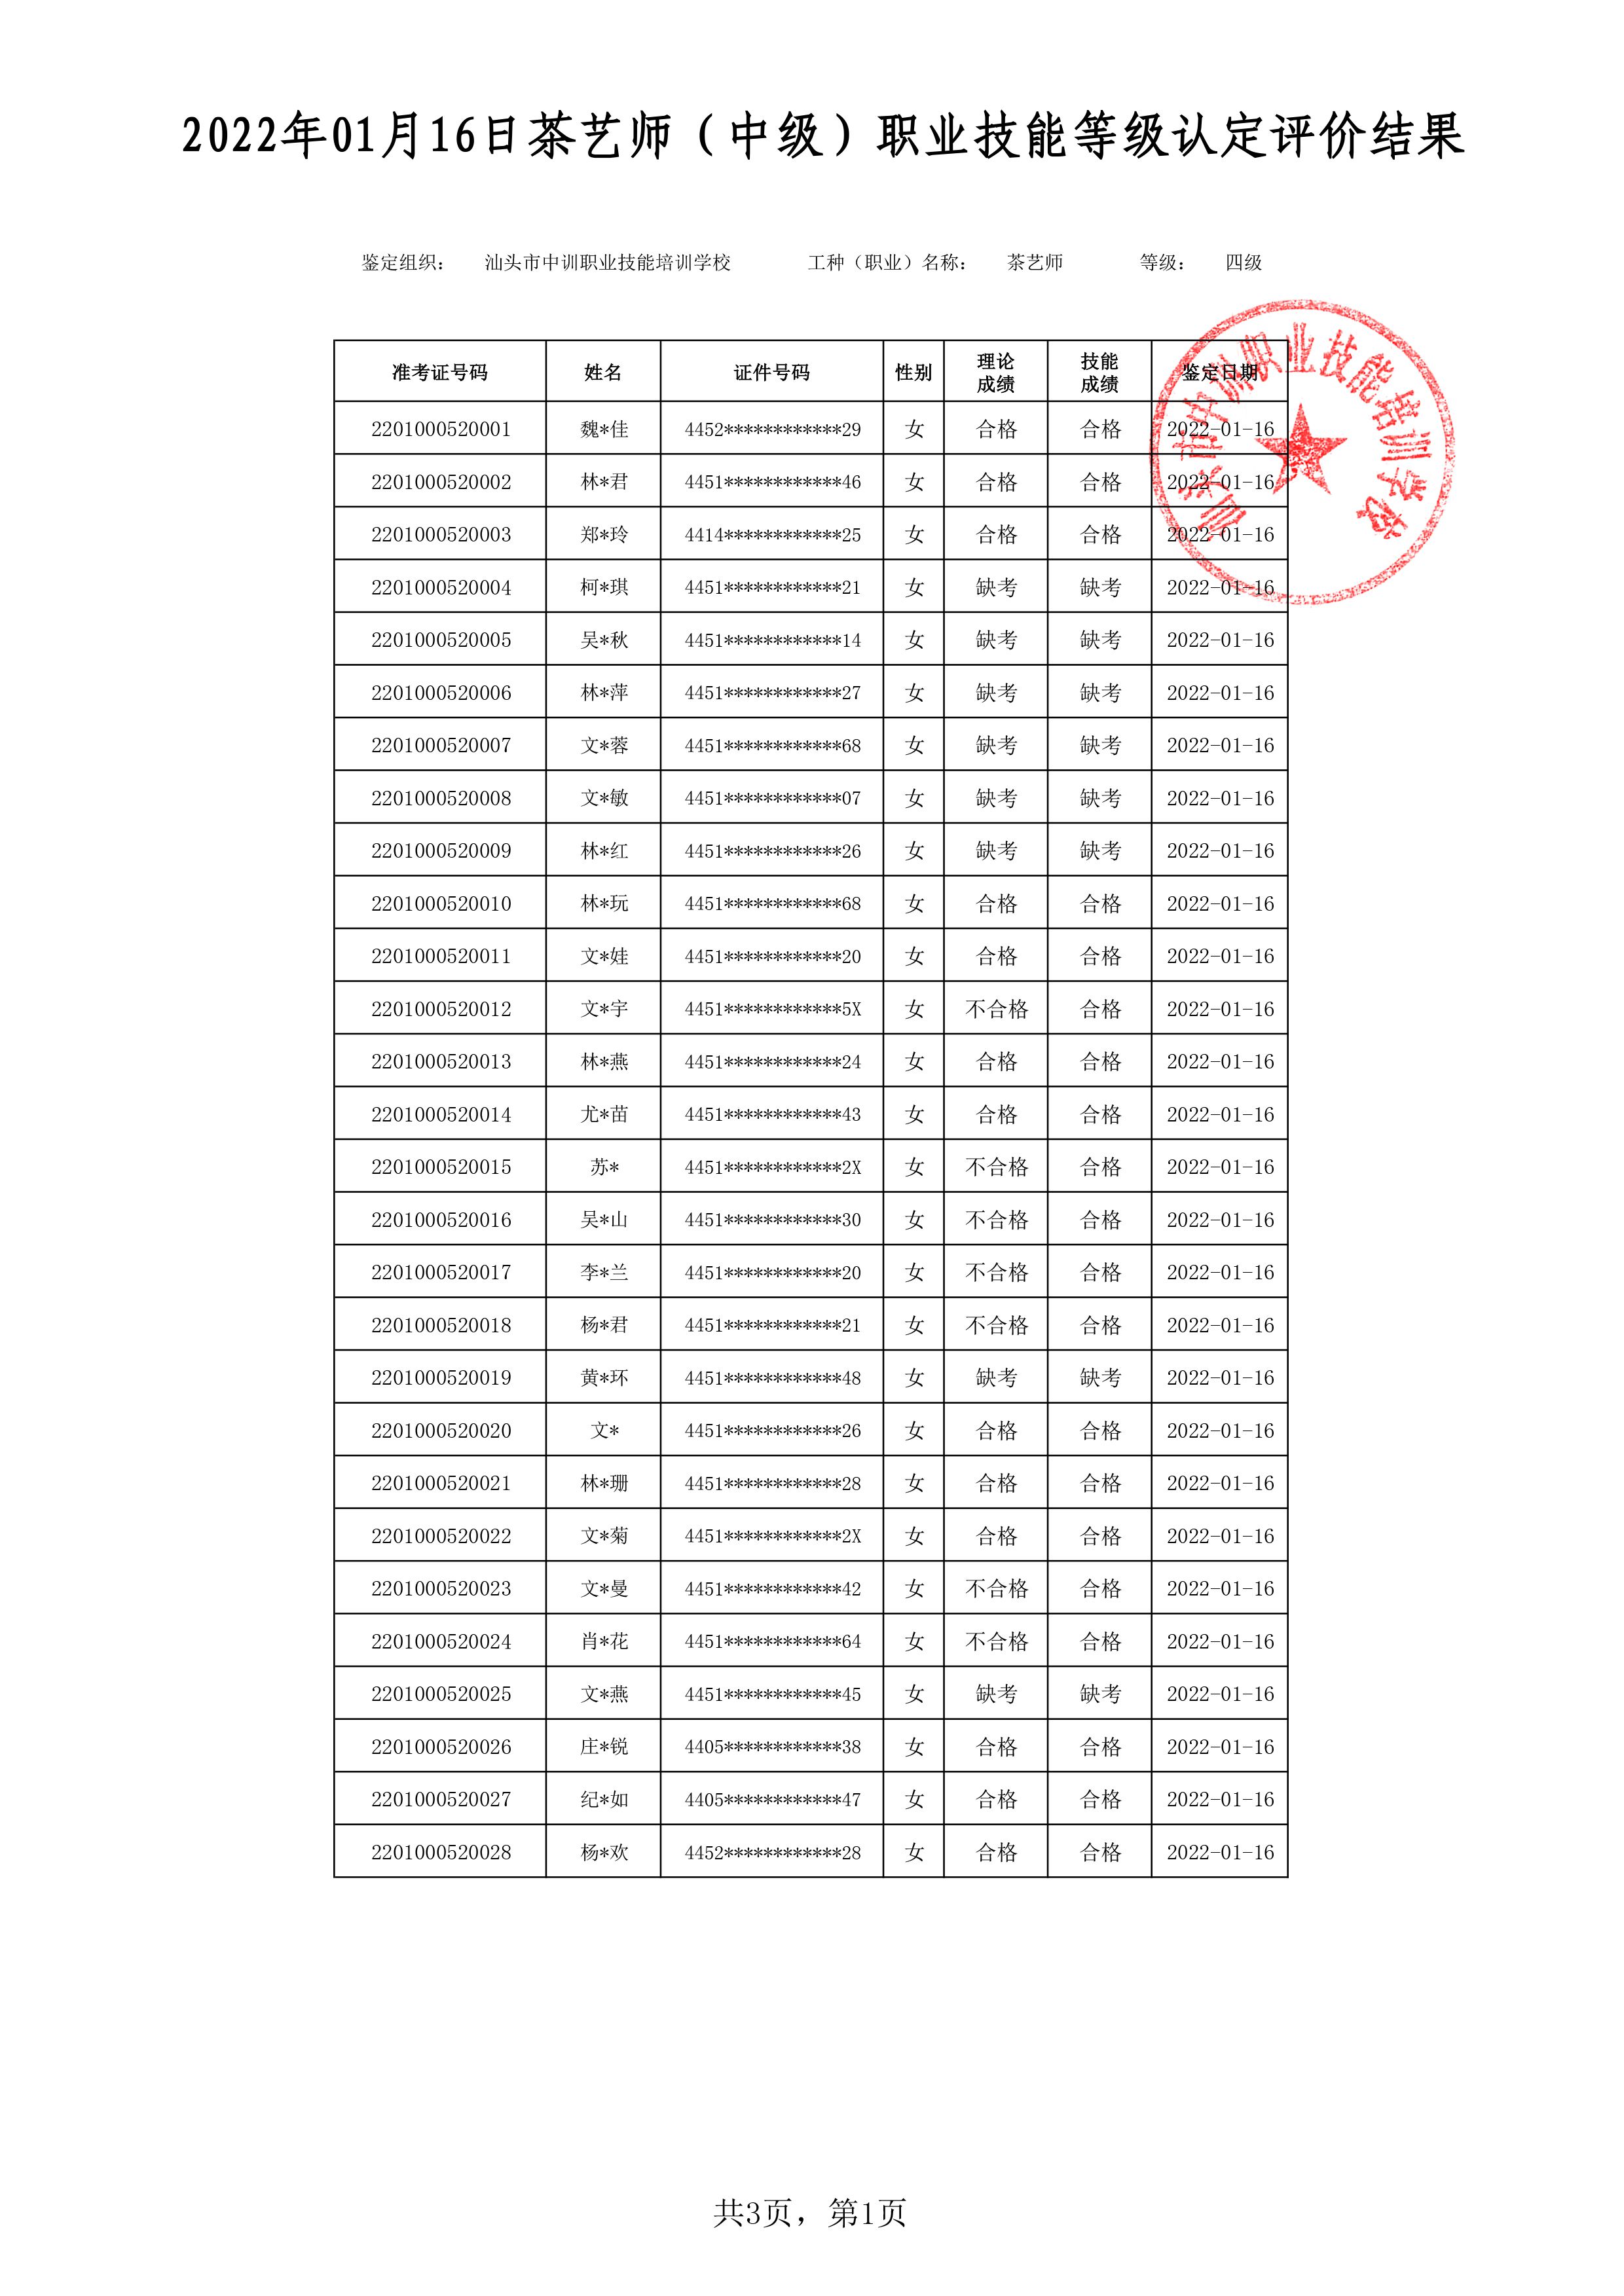 22-01-16四级茶艺师考试鉴定名册表 -1 副本.jpg